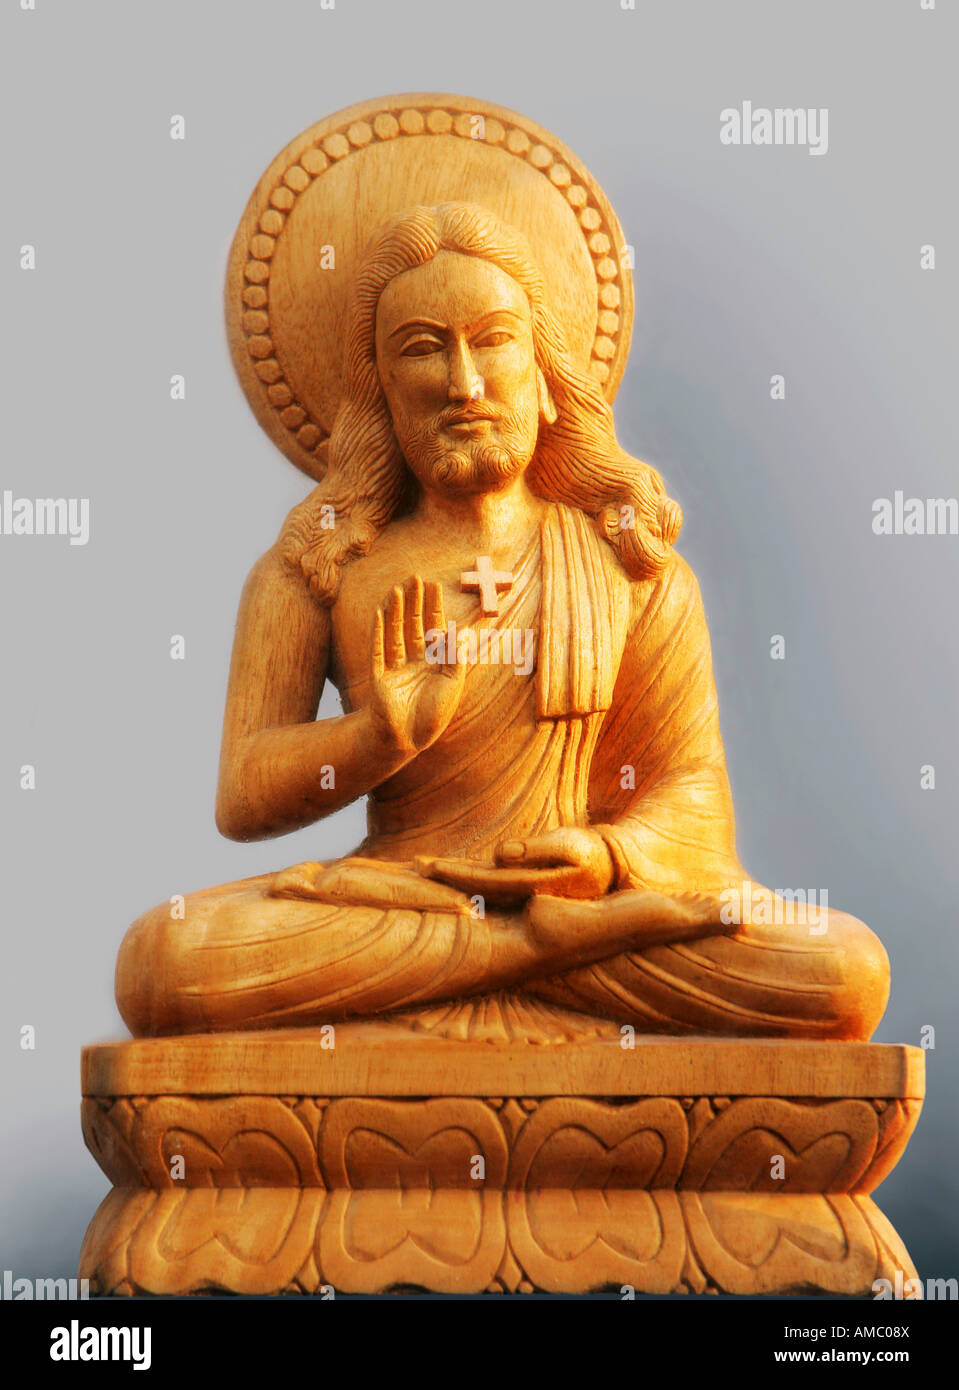 L'Inde, Patna, 25.11.2007 : statue de Jésus Christ dans une position assise bouddhiste Banque D'Images